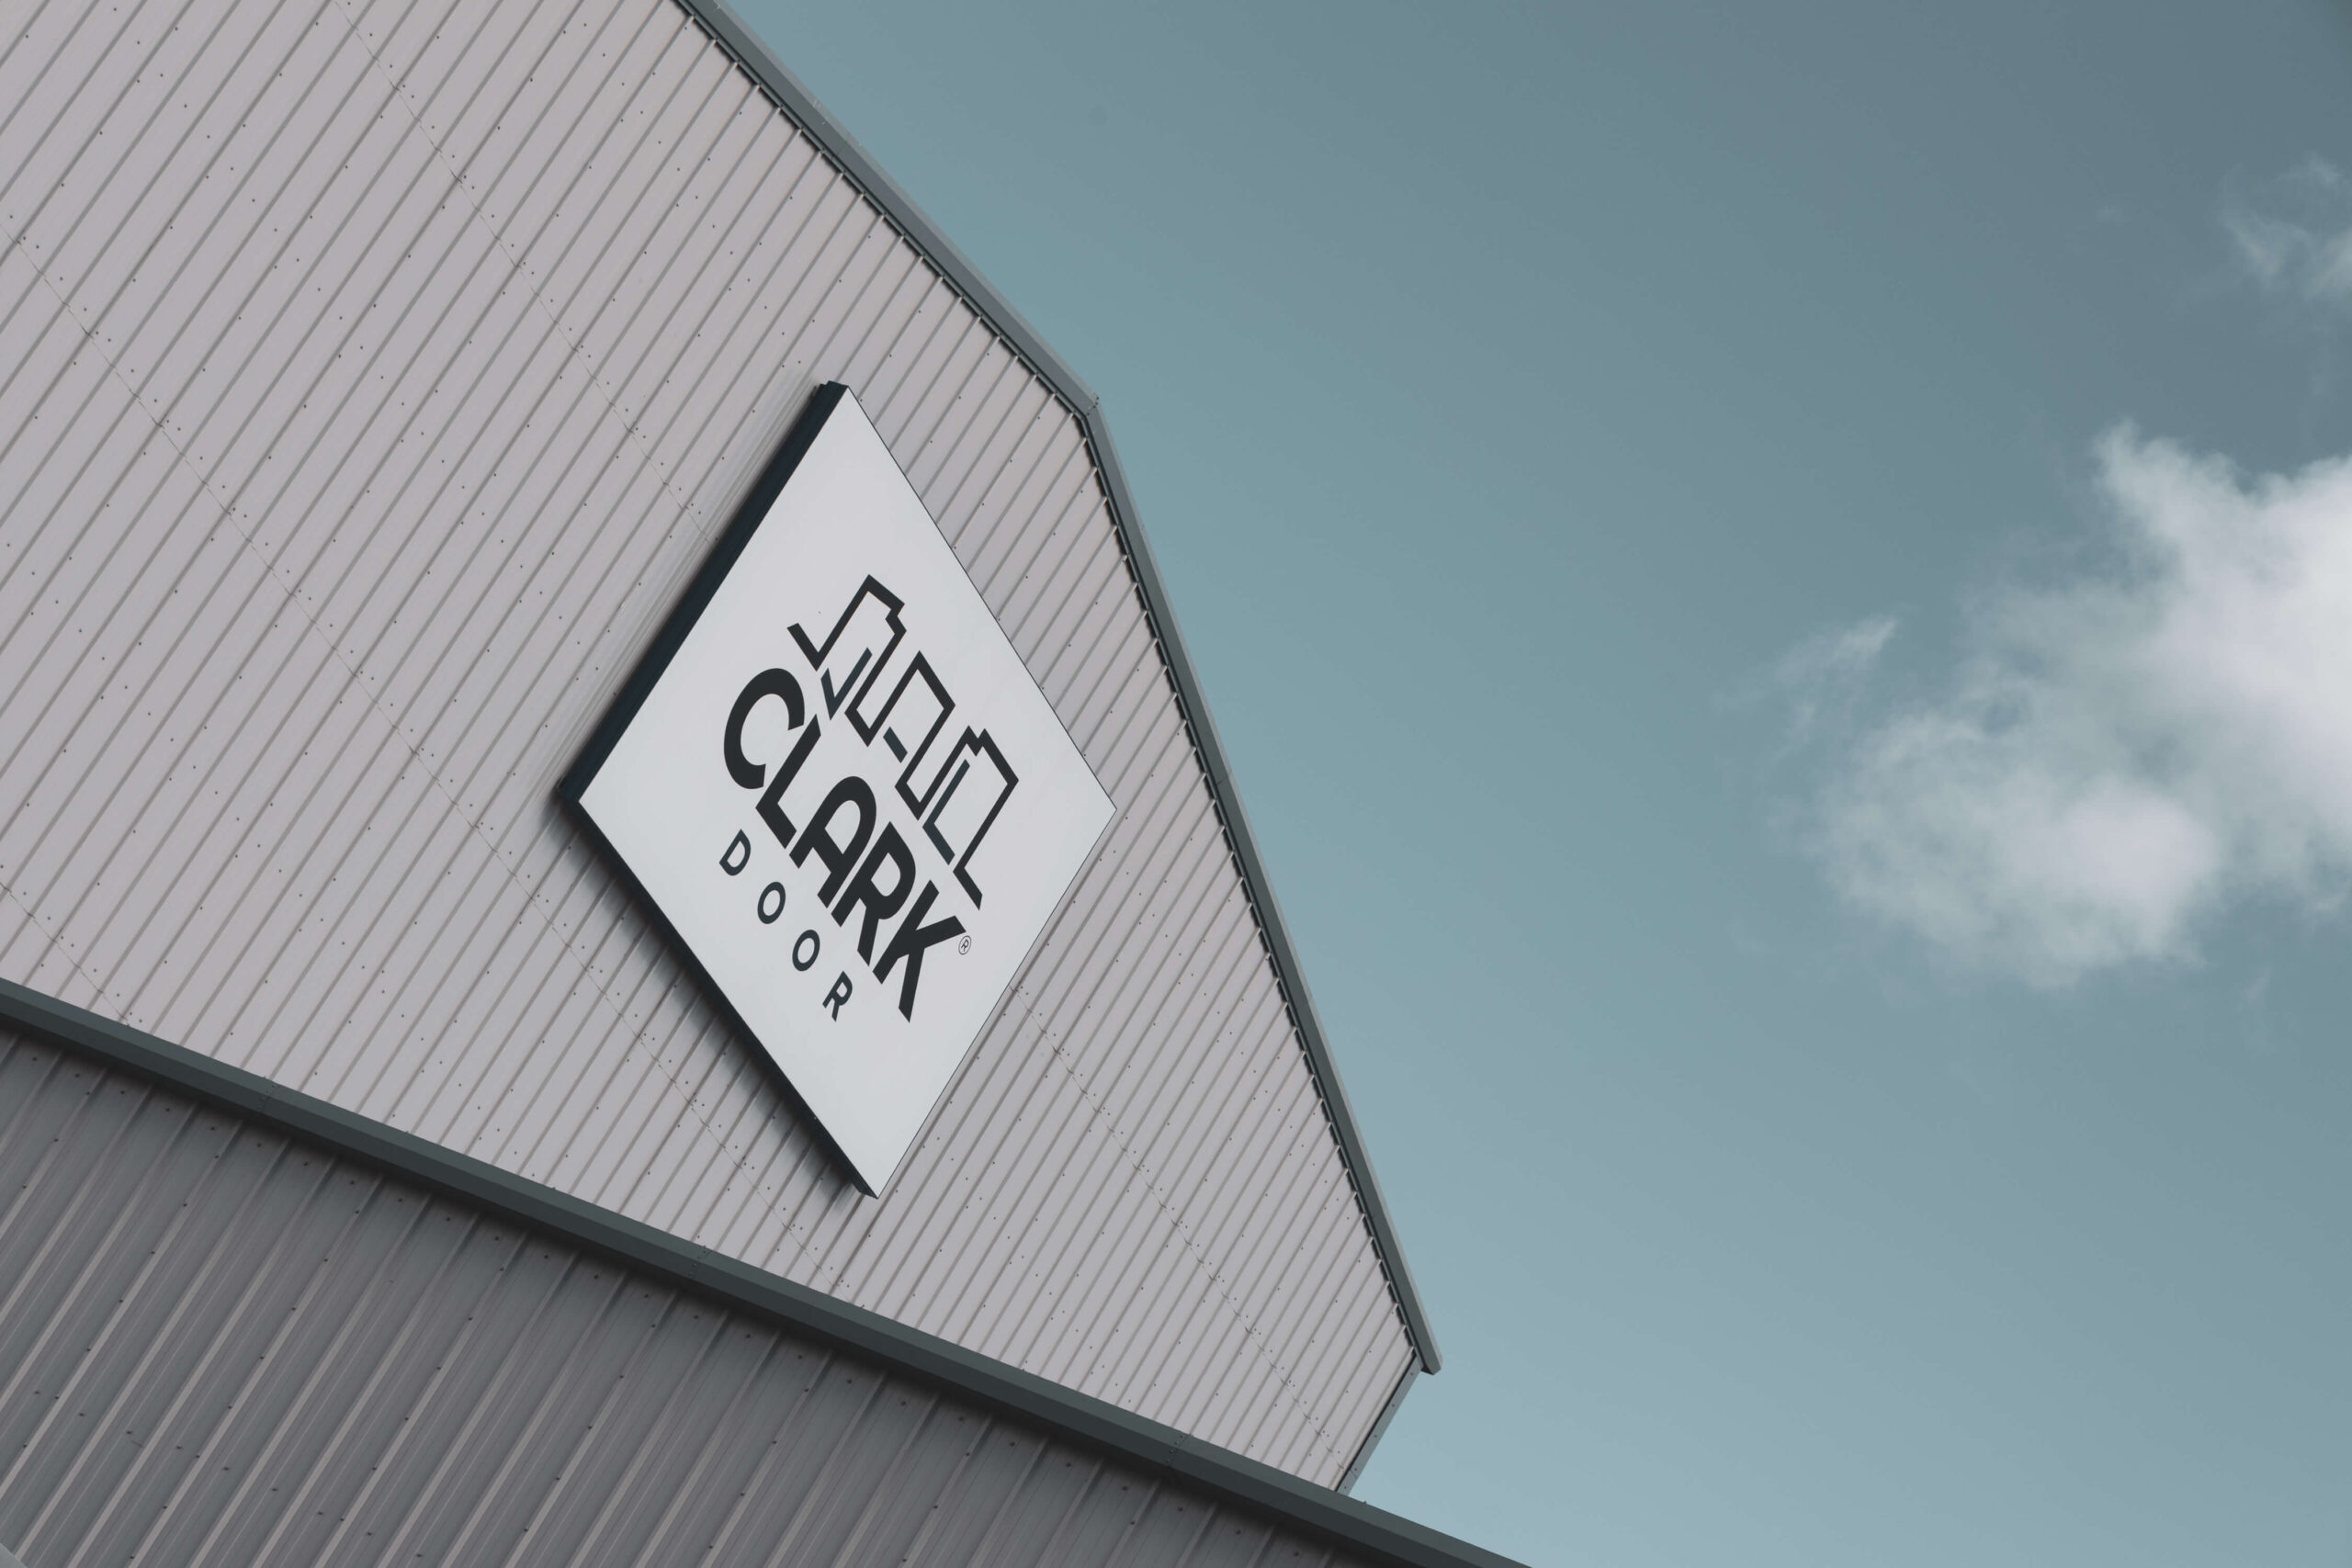 Clark Door factory